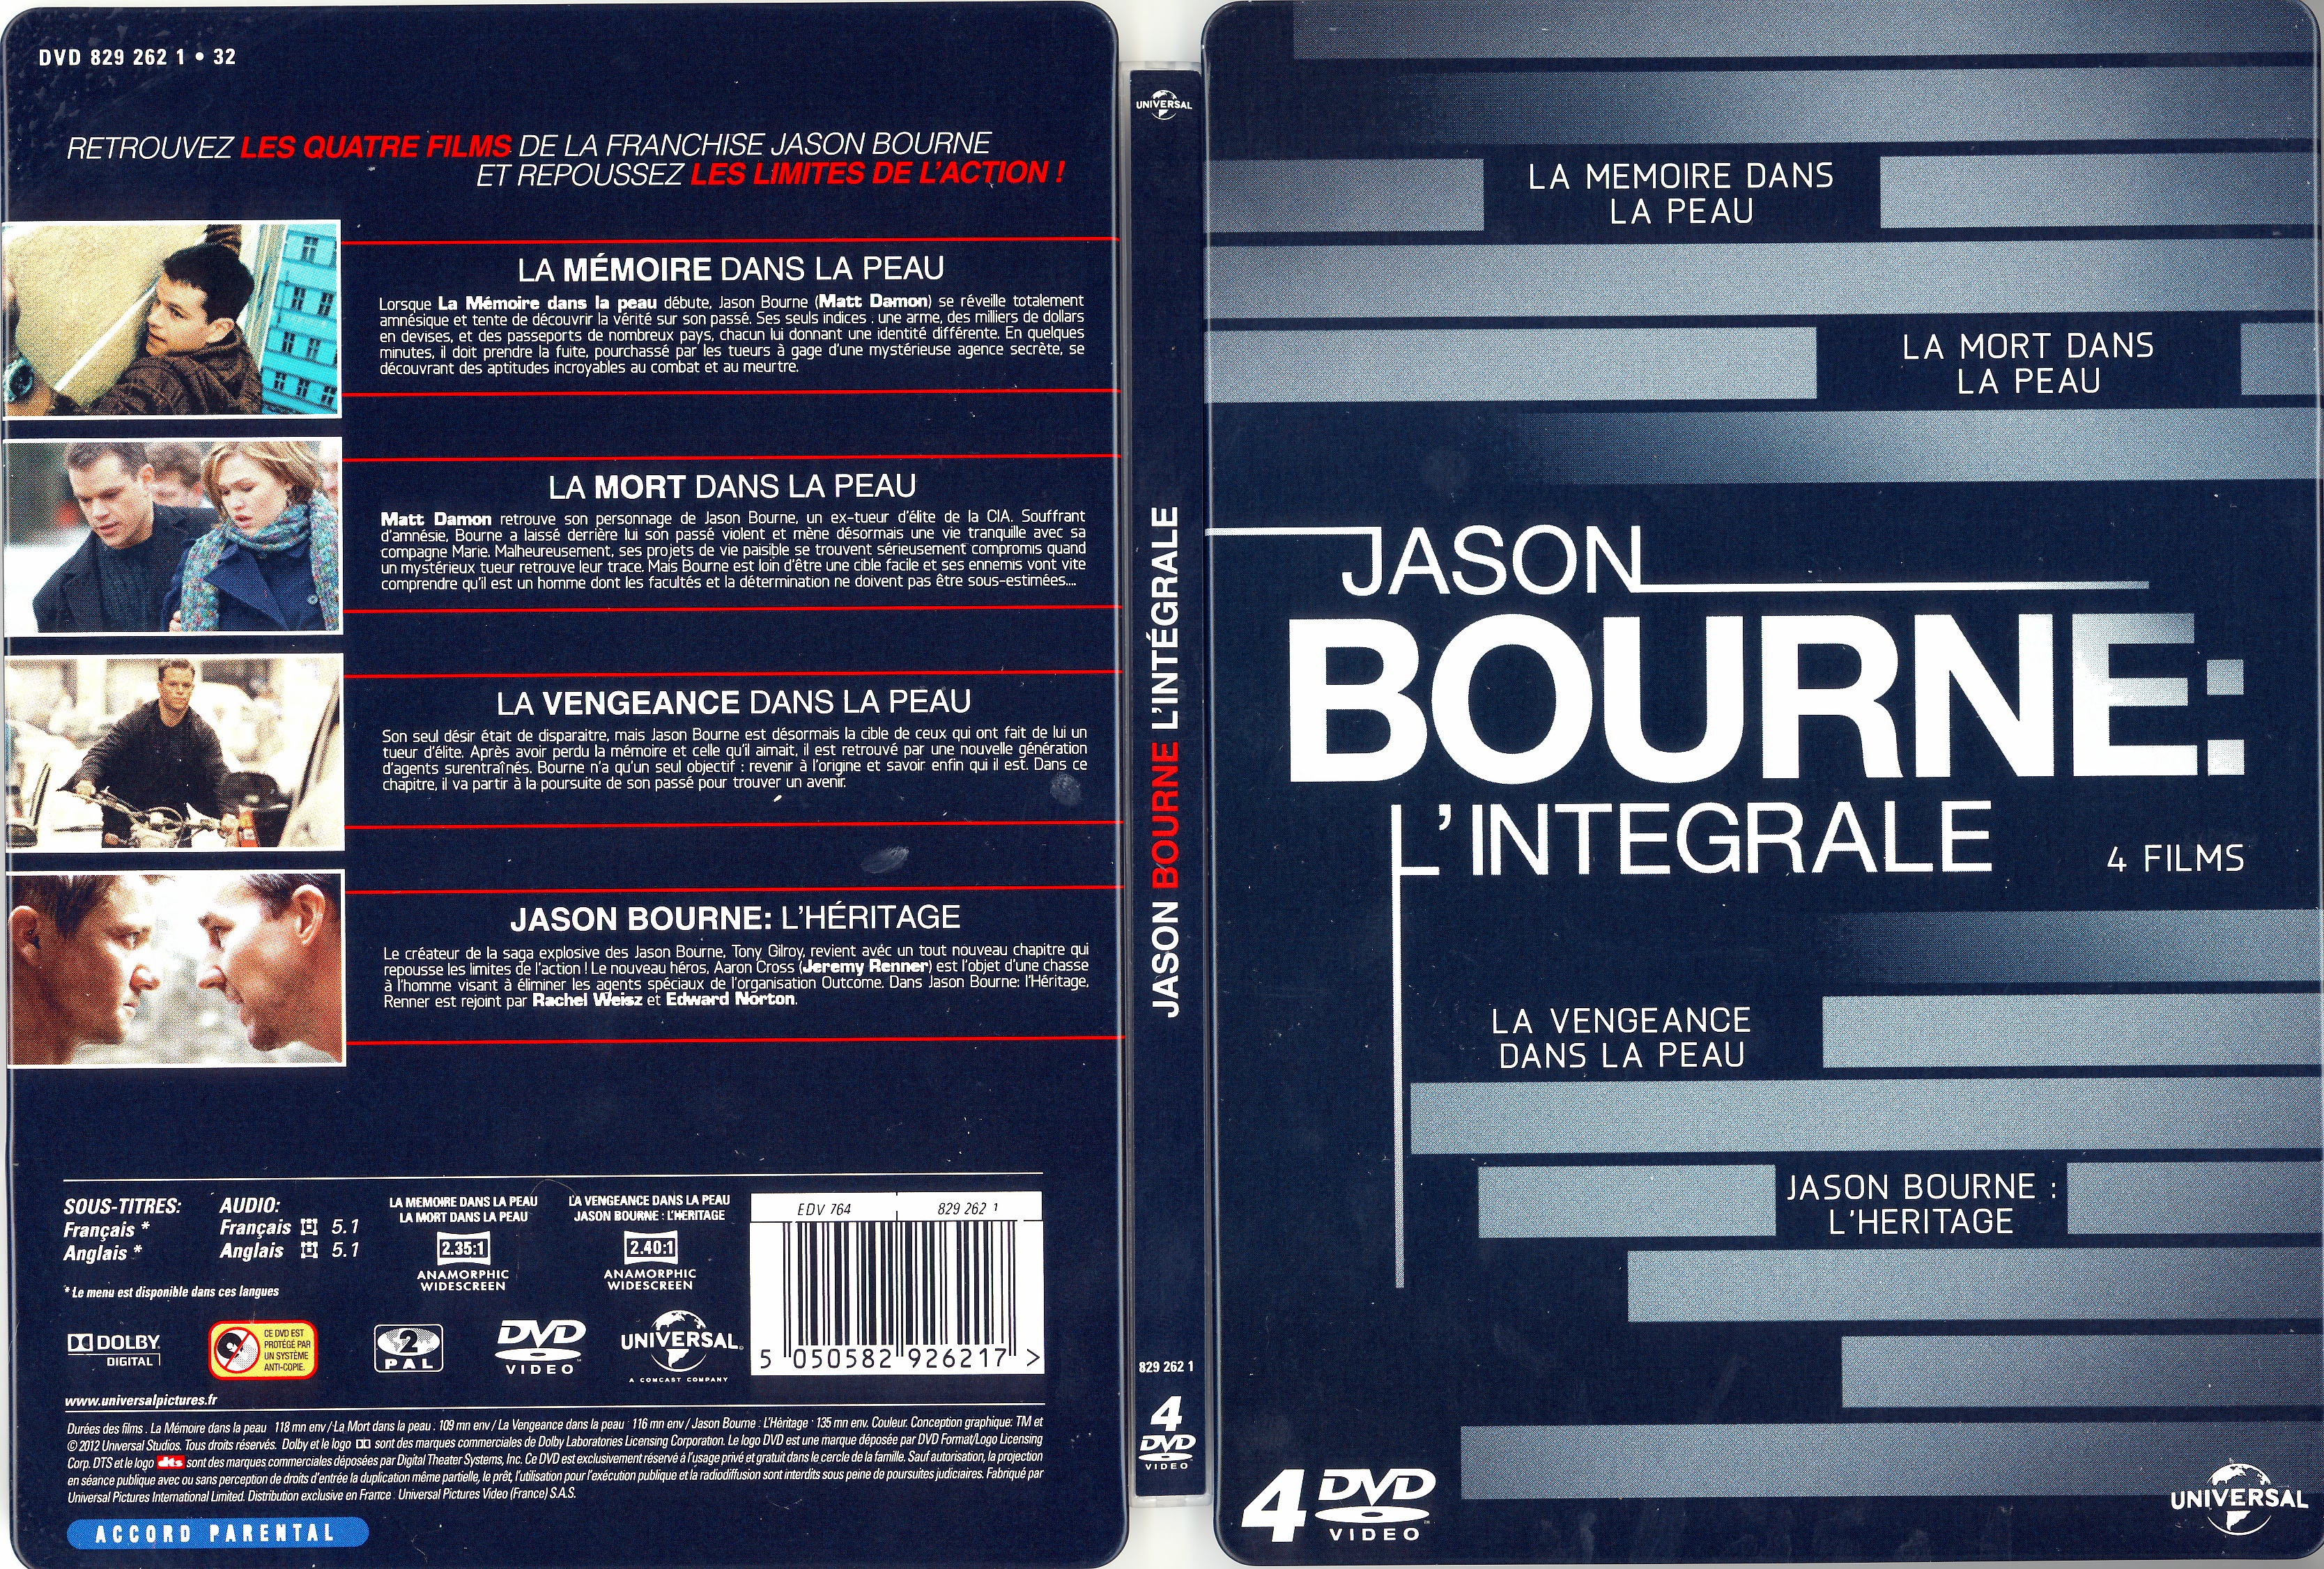 Jaquette DVD Jason Bourne l